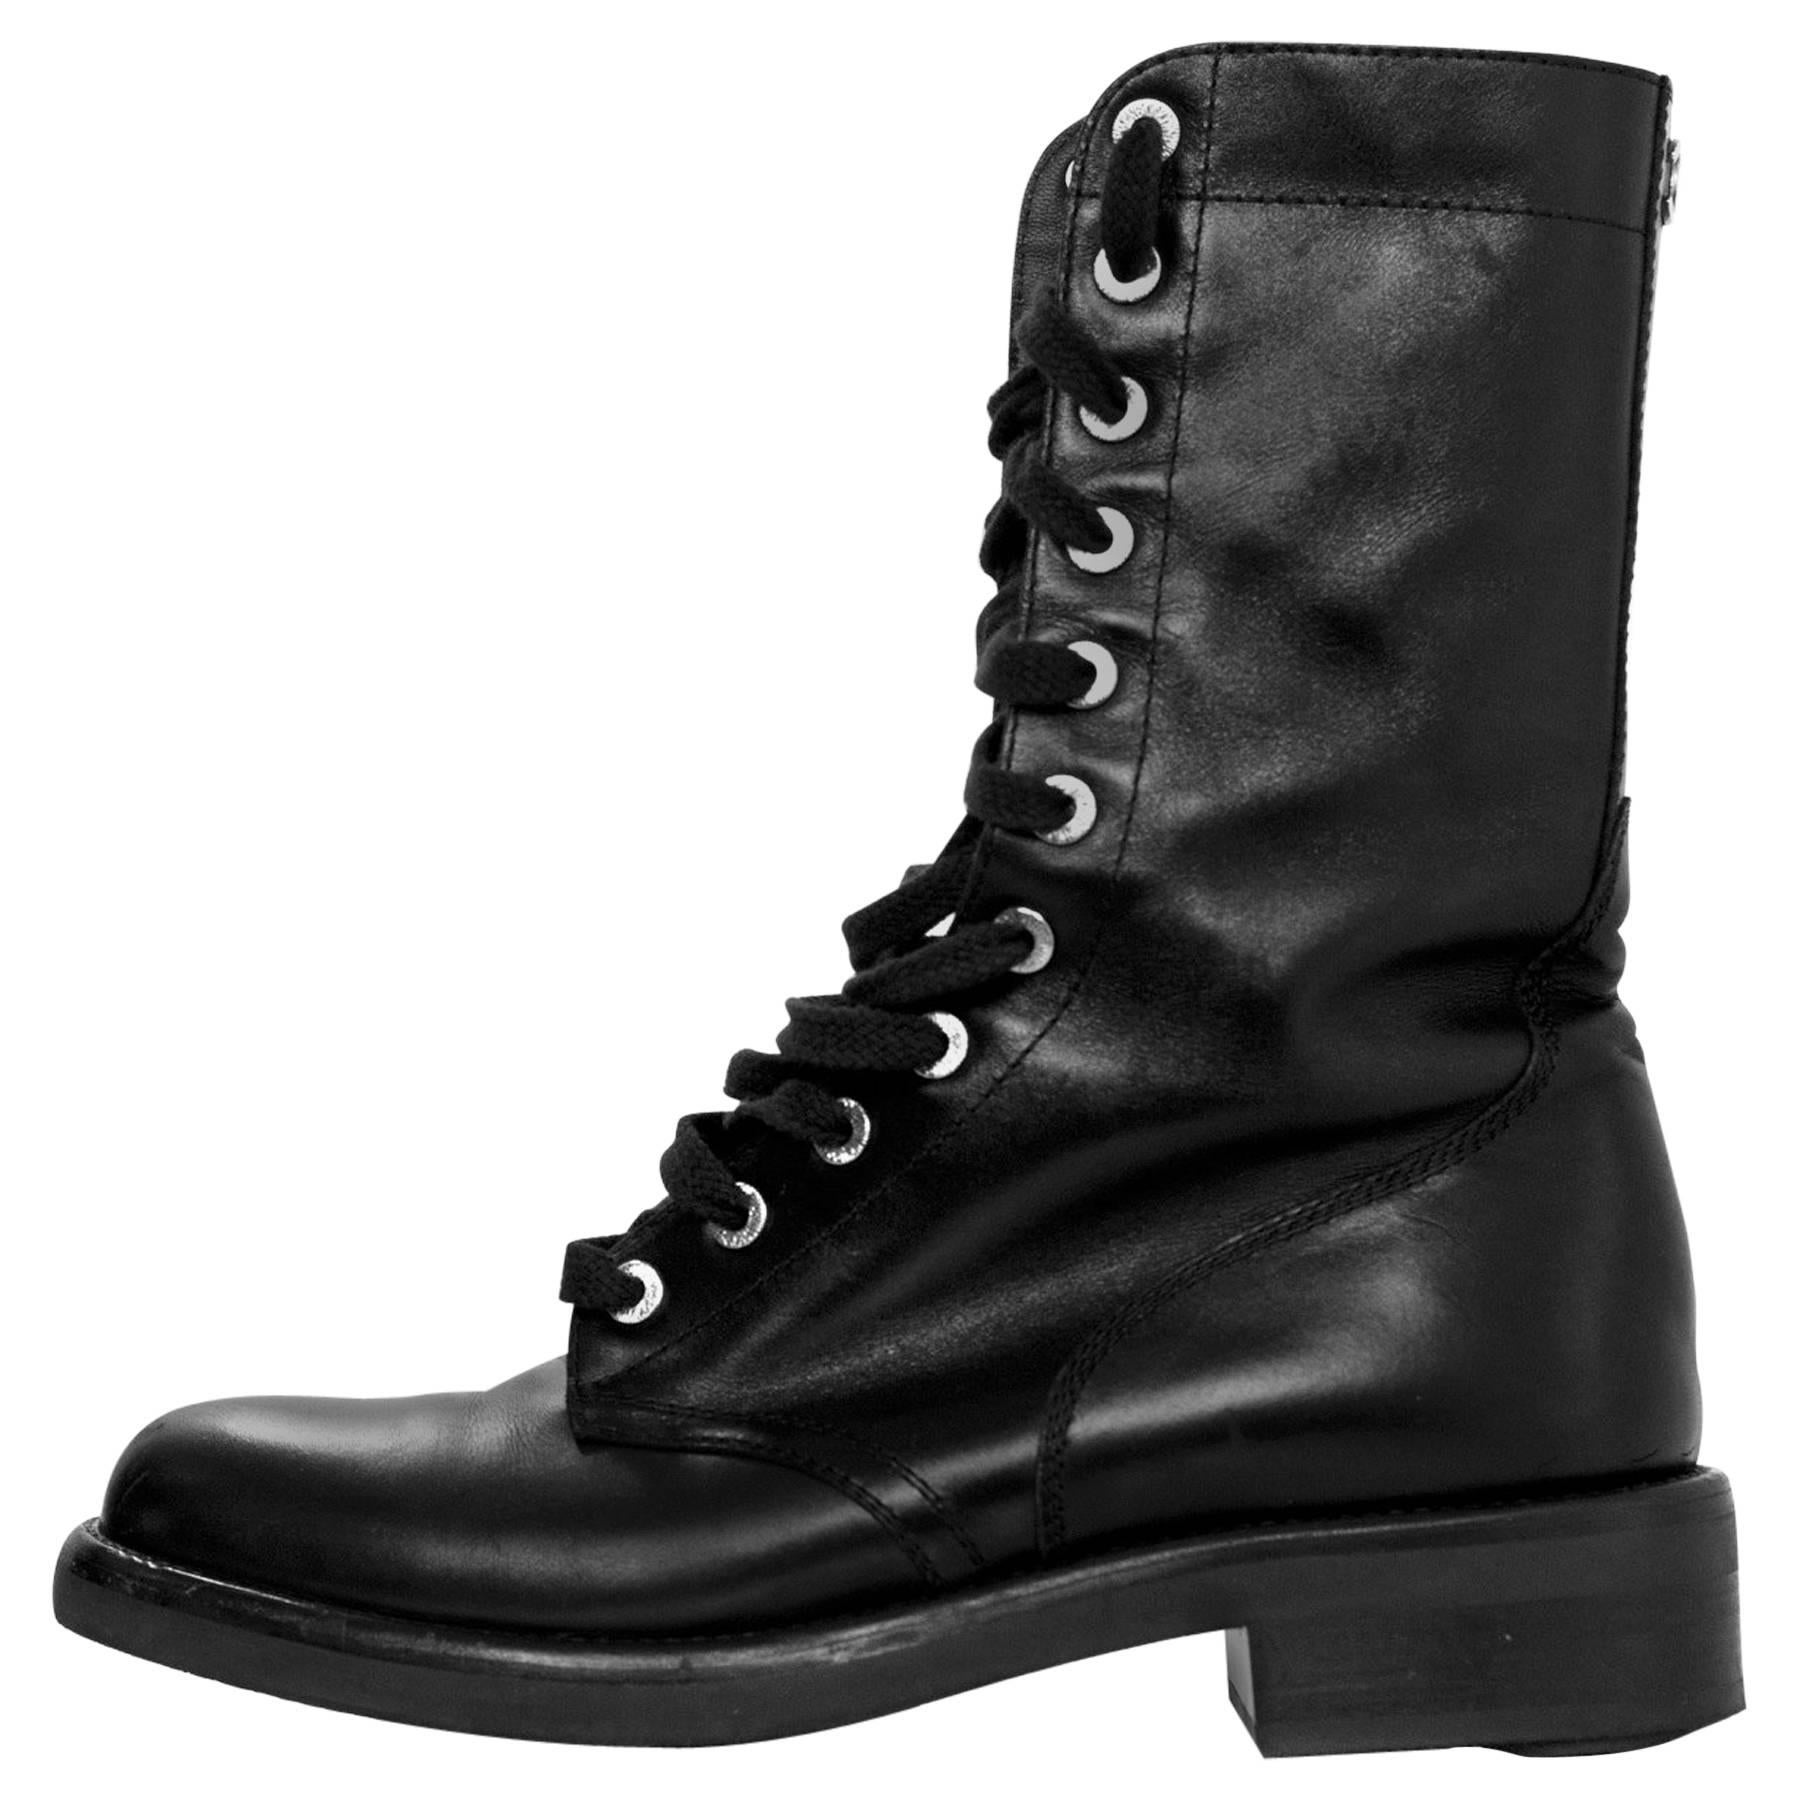 Chanel Paris Edinburgh Black Leather Lace Up Combat Boots Sz 40